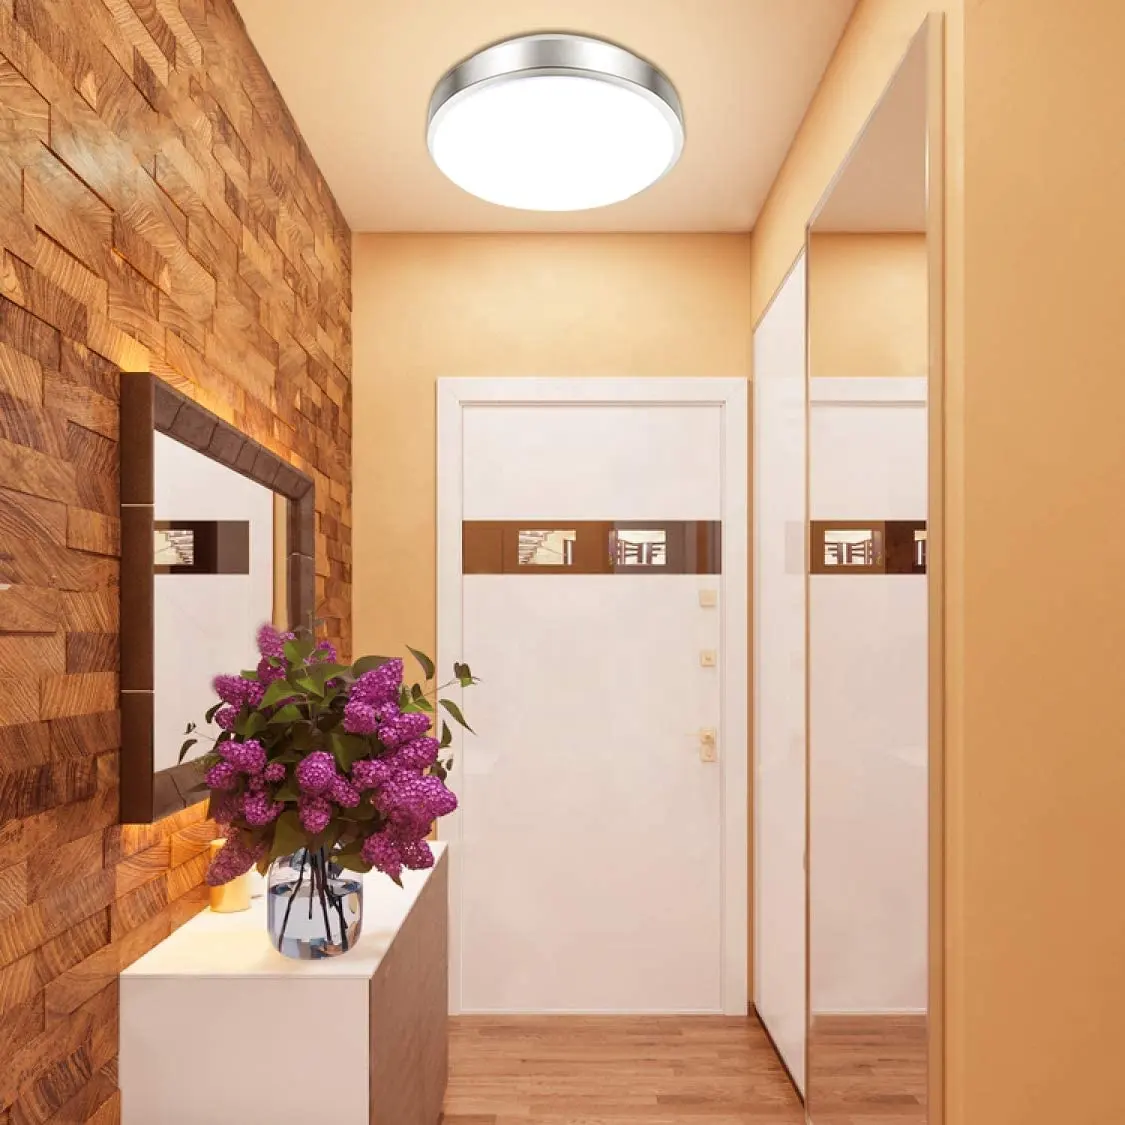 전자 레인지 모션 센서 천장 조명 램프 거실 침실 에너지 절약 18W 라운드 Led 천장 패널 조명